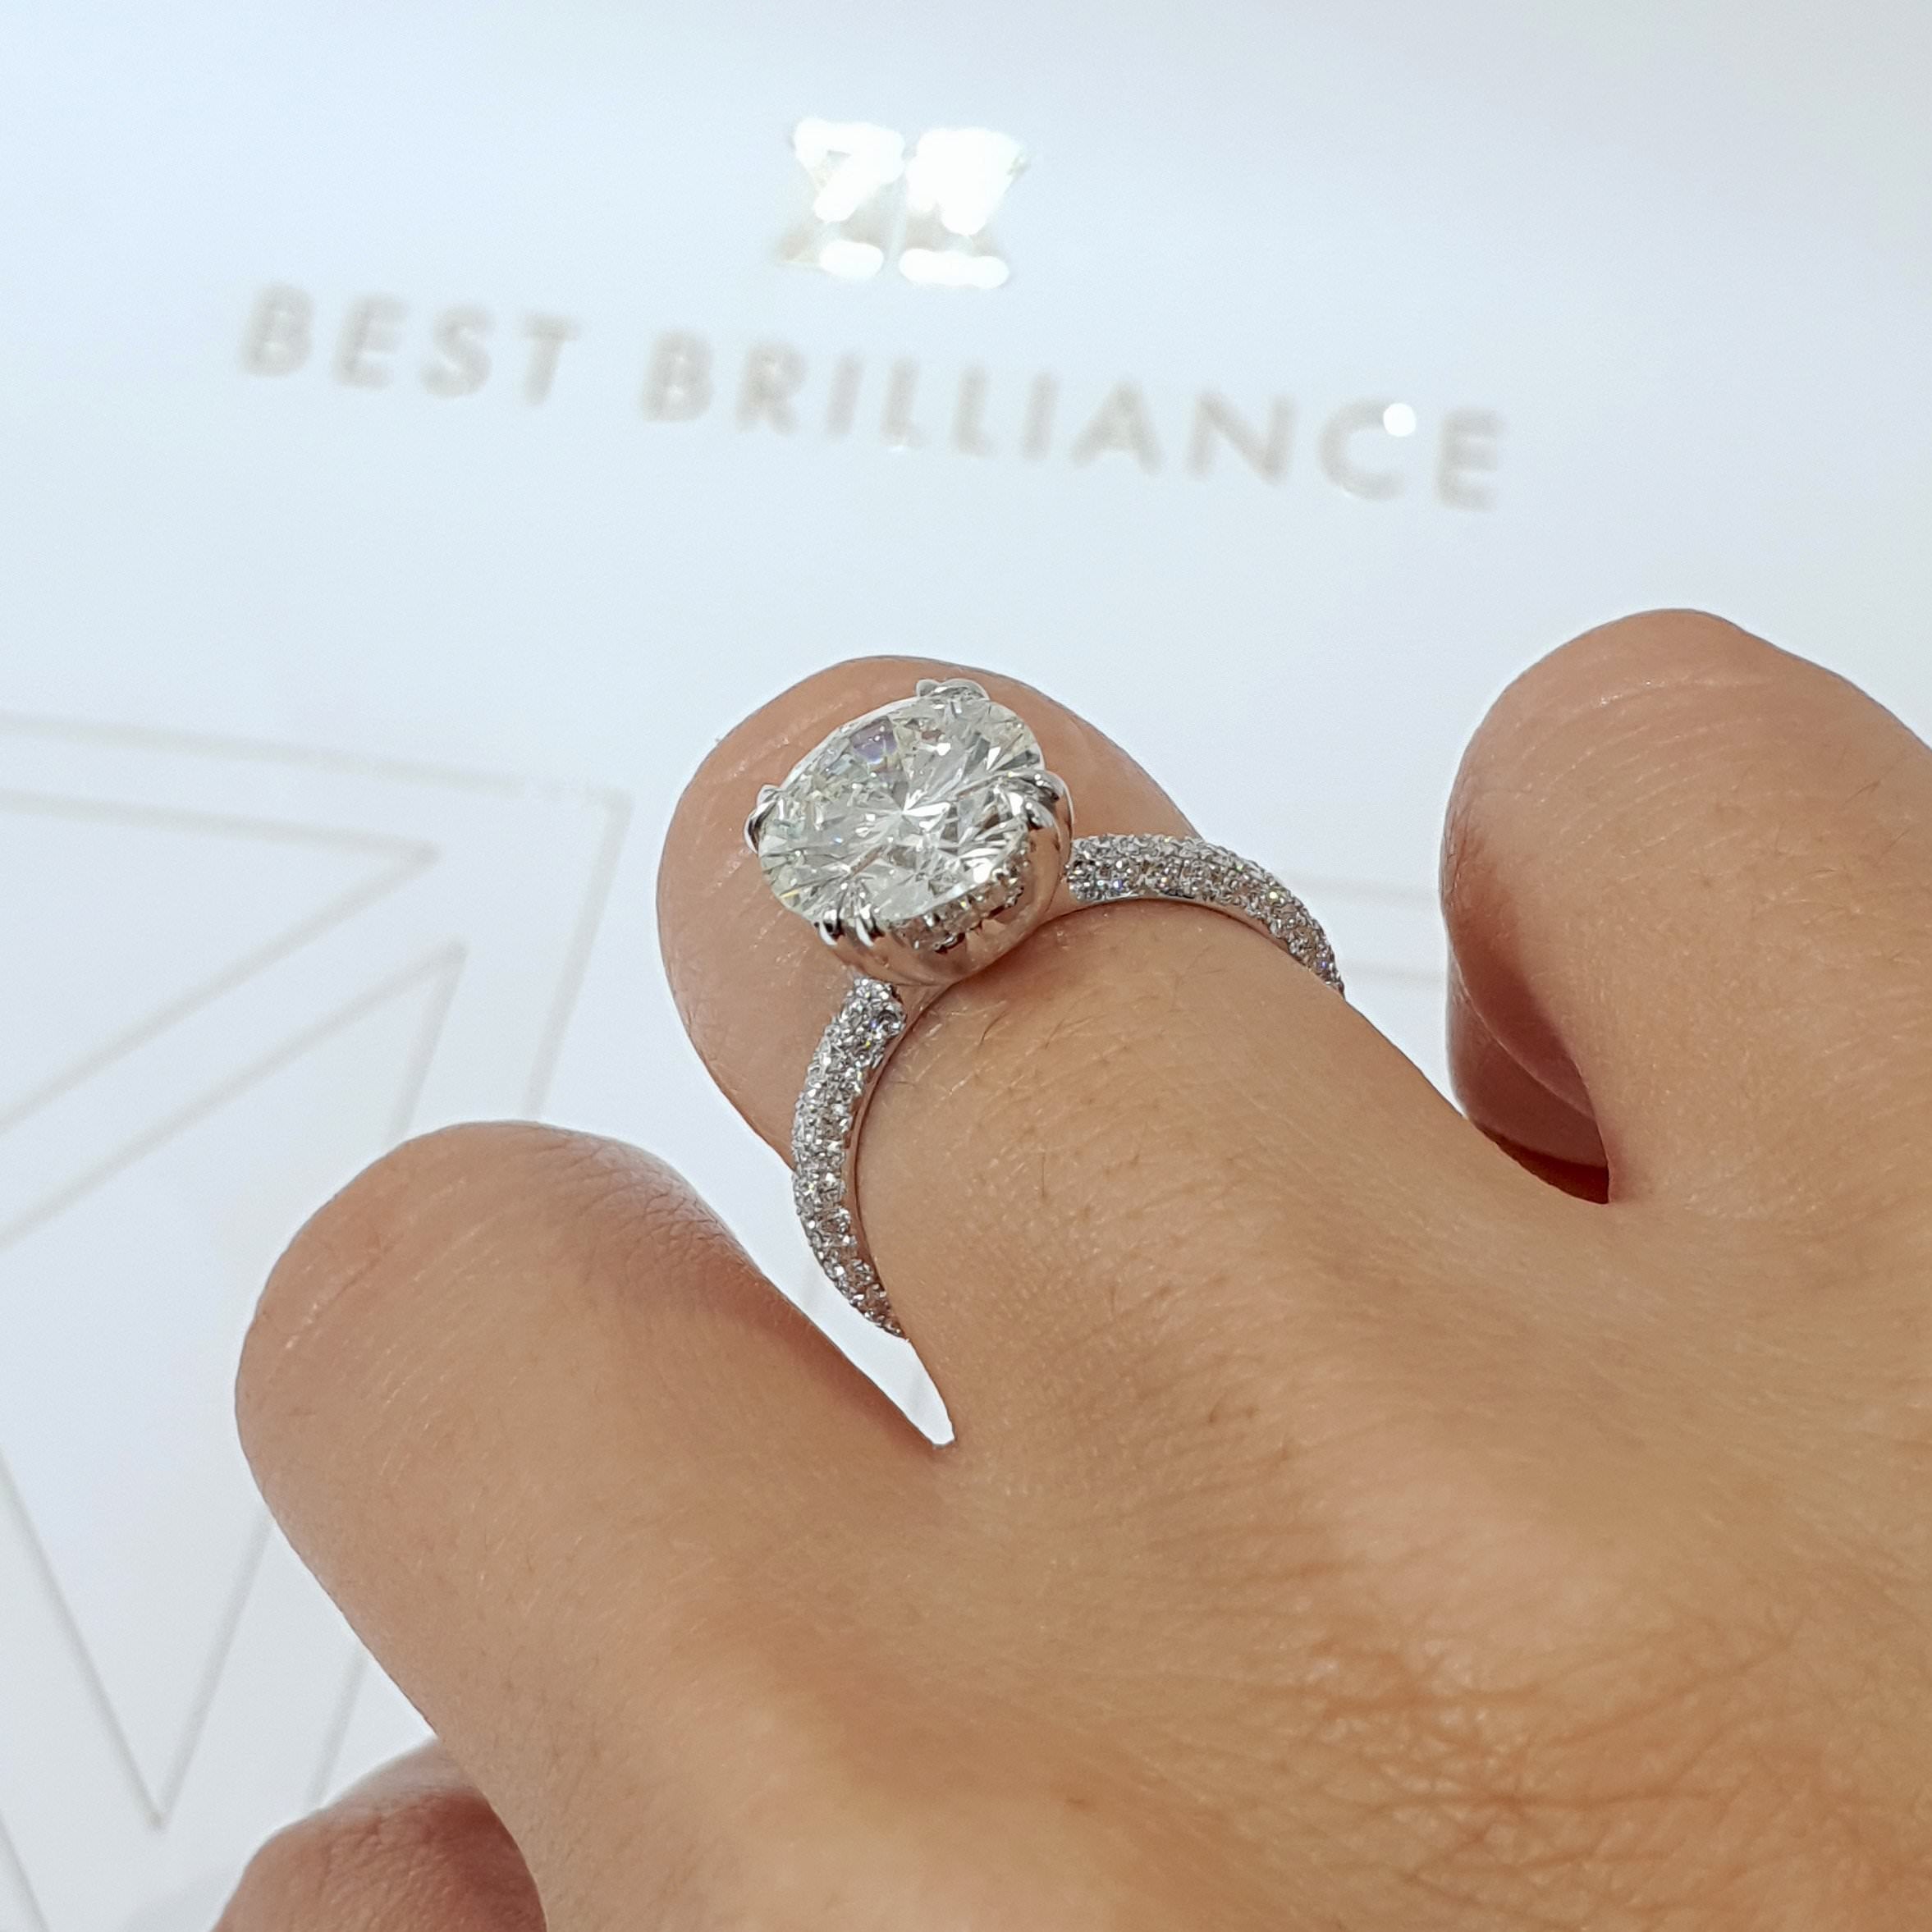 Lorena Diamond Engagement Ring   (3.5 Carat) -14K White Gold